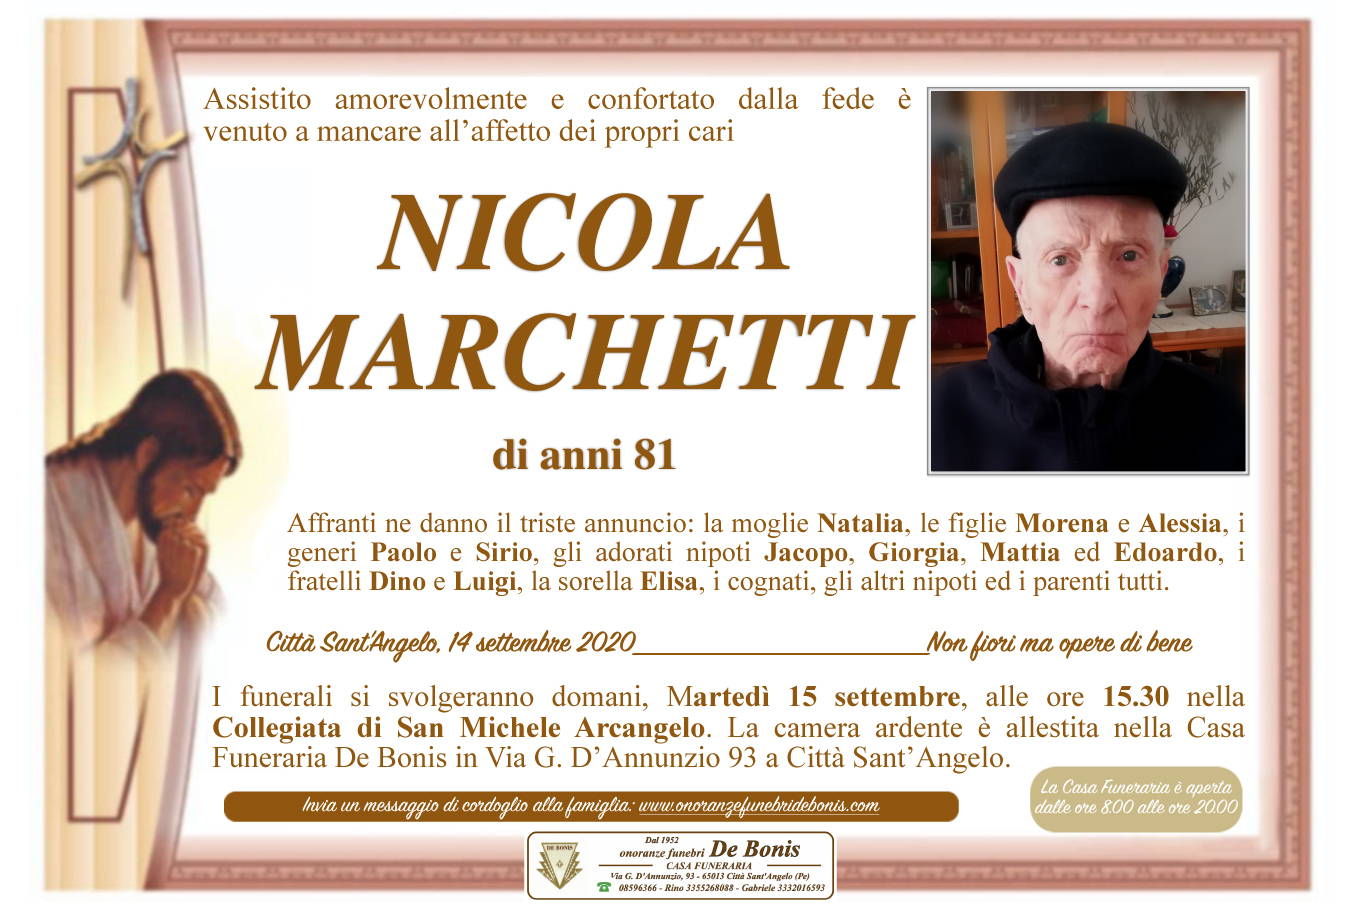 Nicola Marchetti